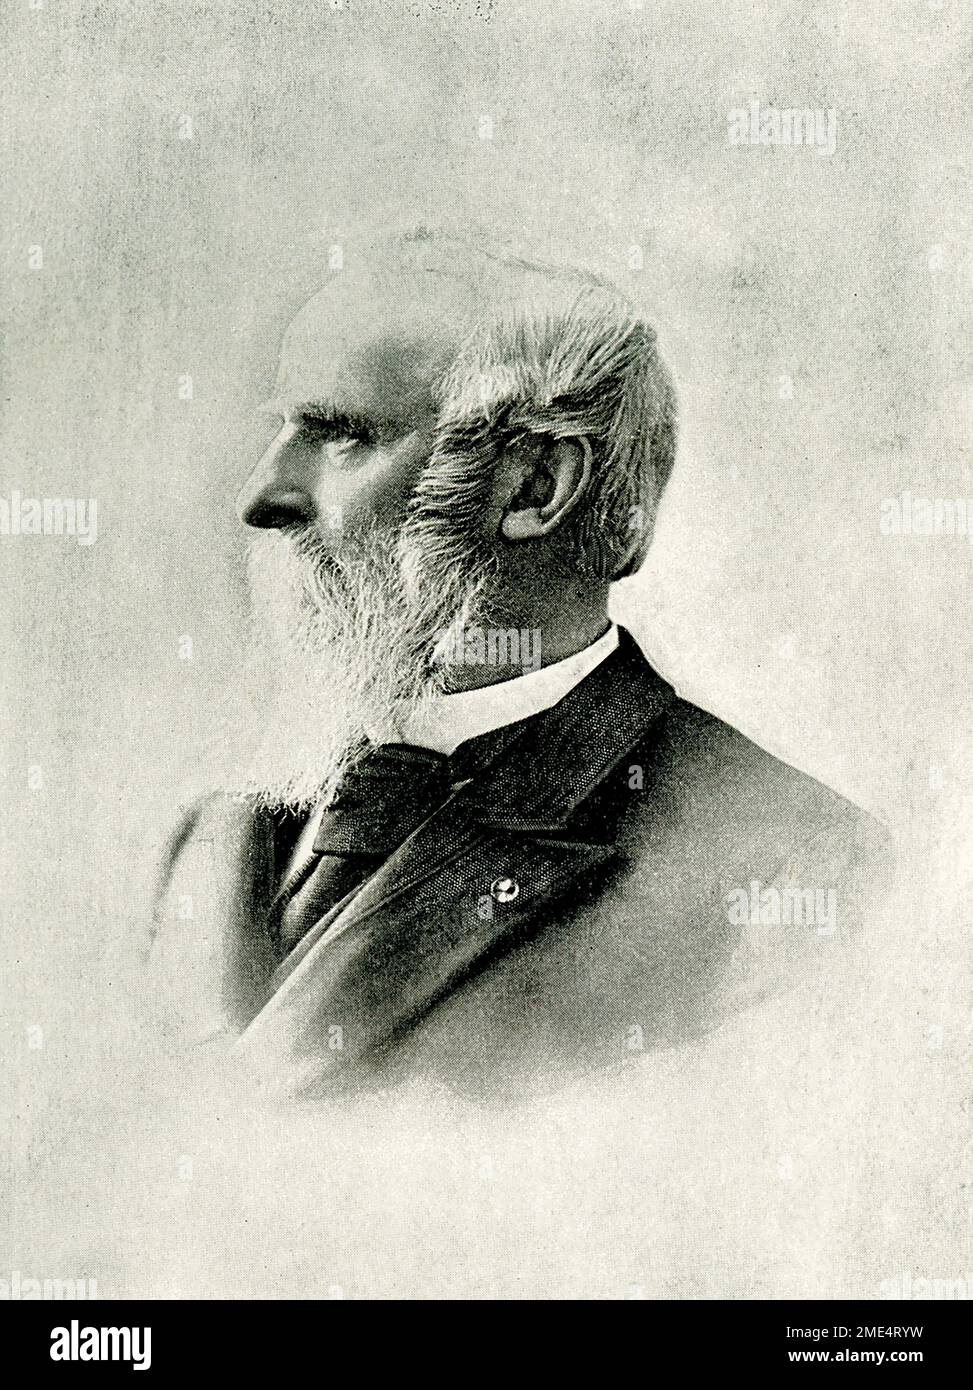 Rutherford Birchard Hayes était un avocat et homme politique américain qui a été président des États-Unis en 19th de 1877 à 1881, après avoir servi aux États-Unis Chambre des représentants et gouverneur de l'Ohio. Banque D'Images